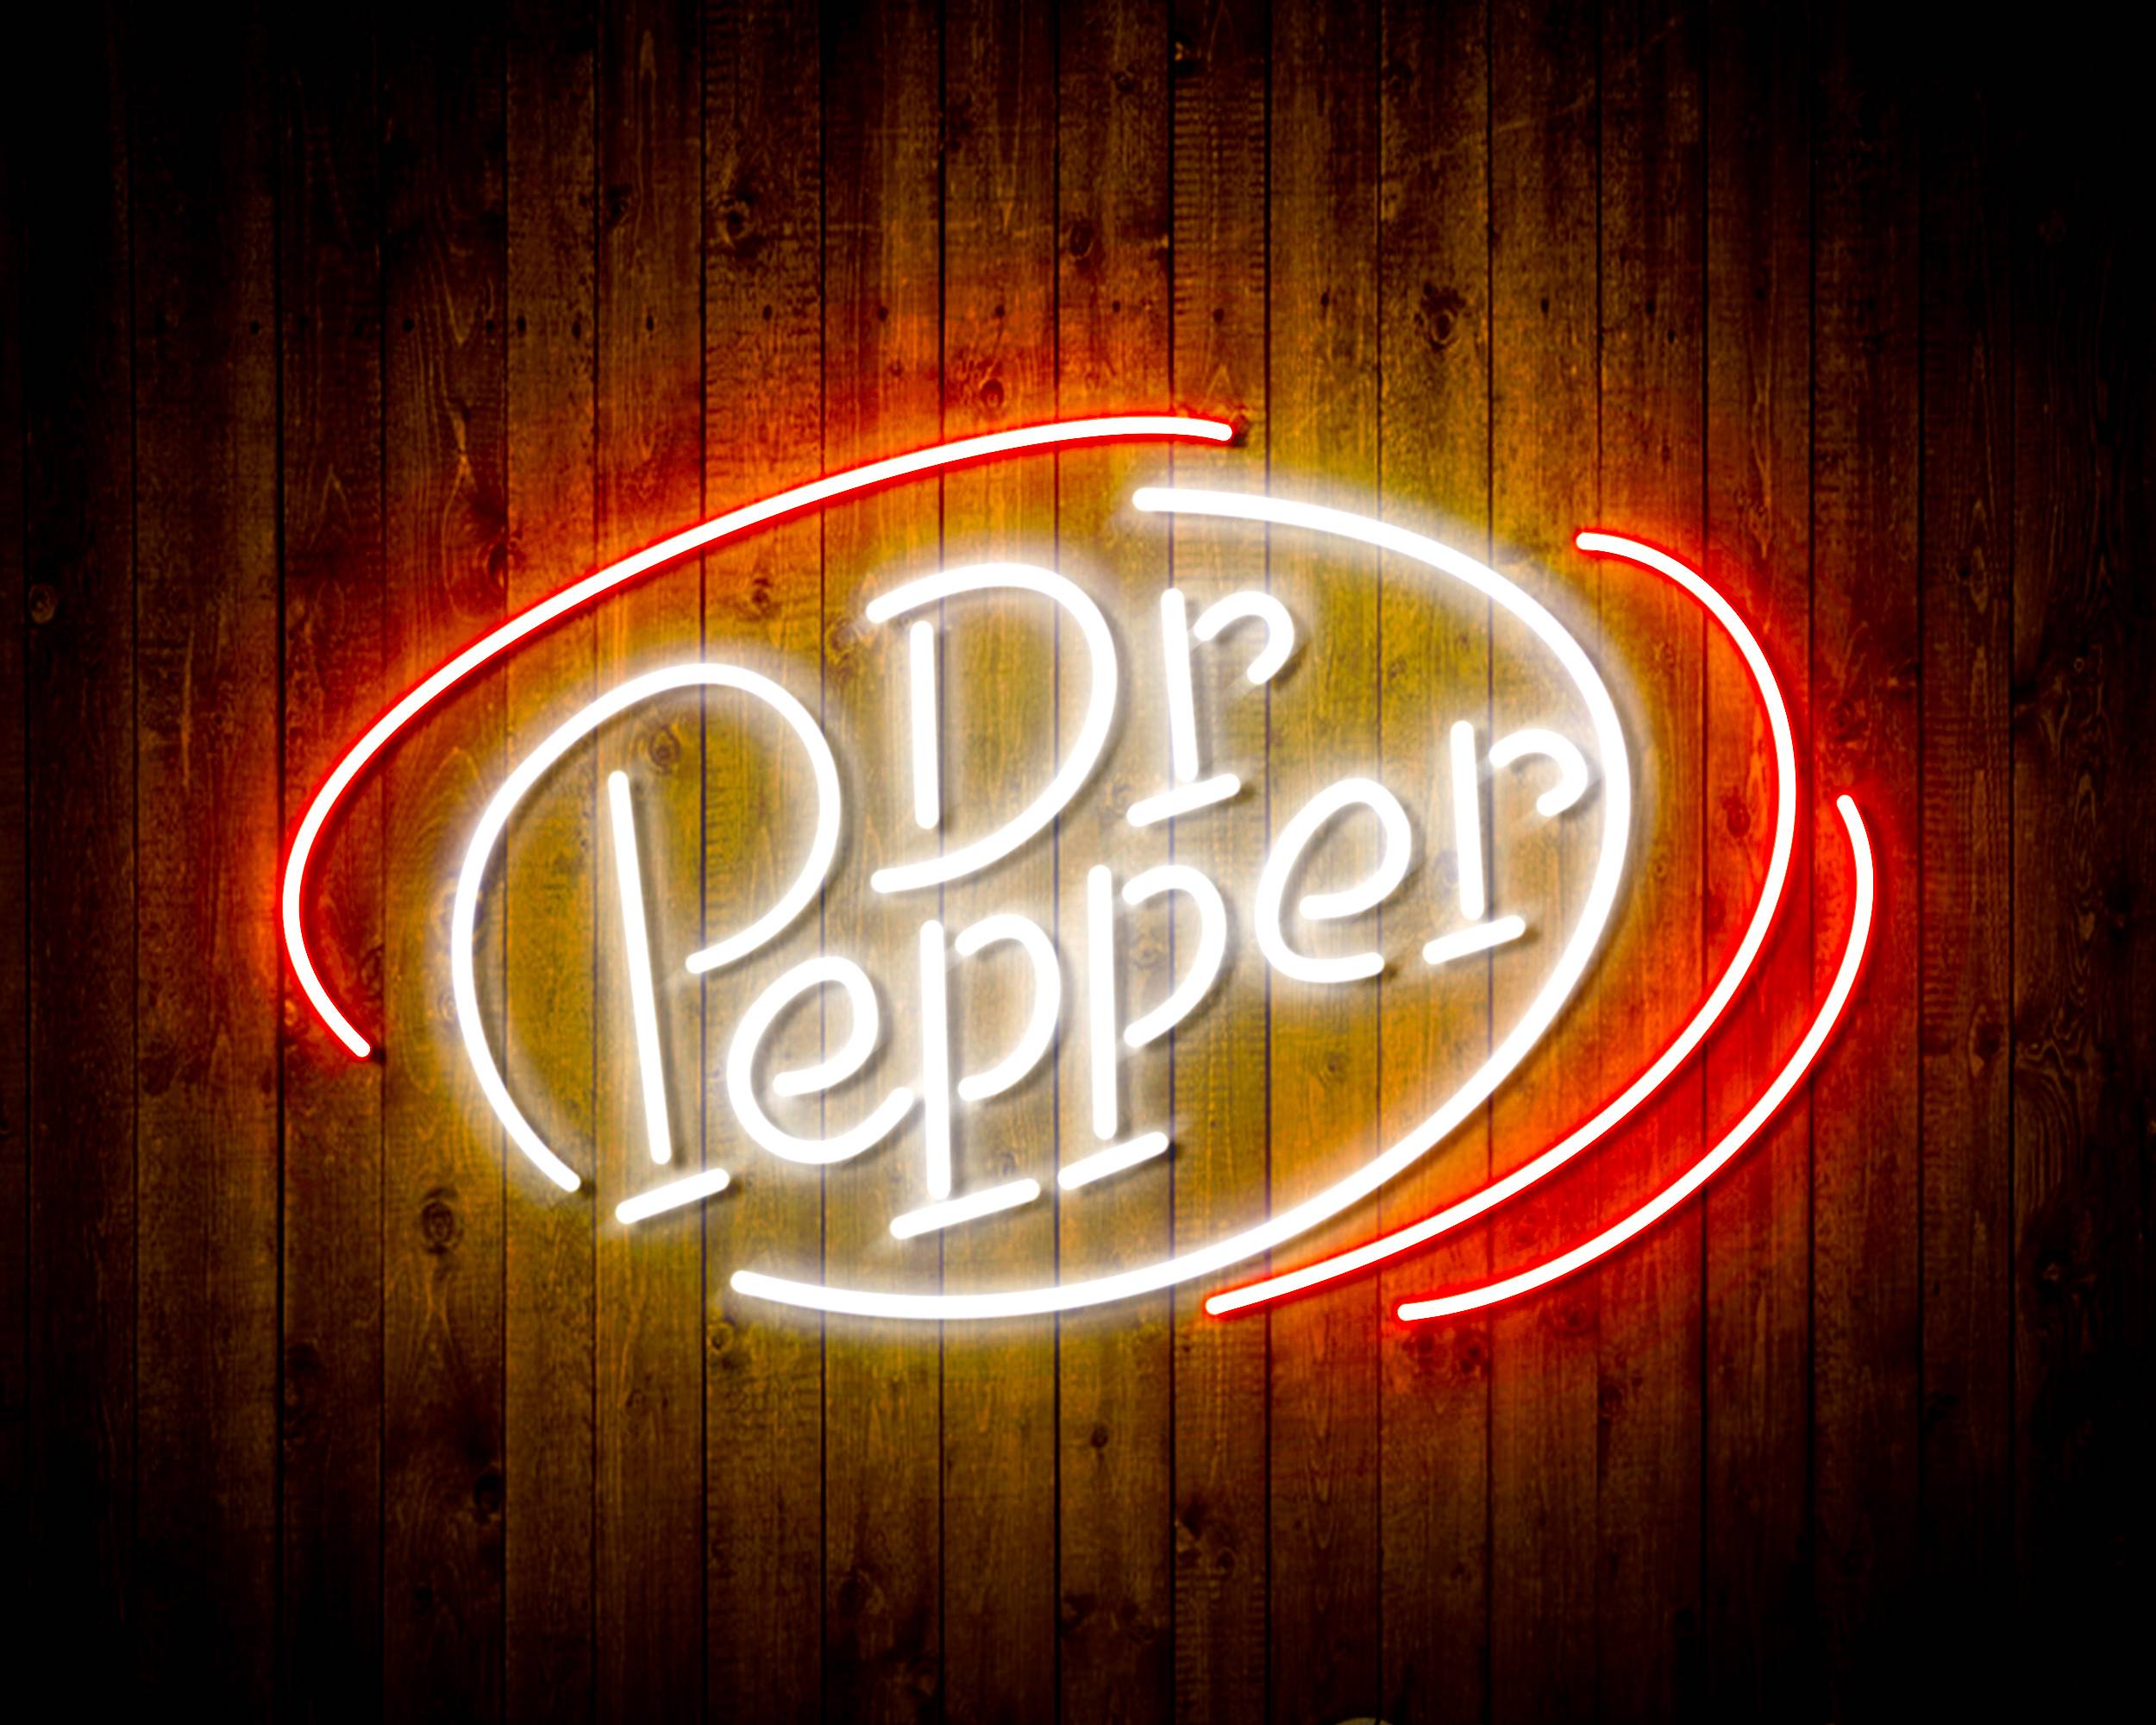 Dr Pepper 3 Handmade LED Neon Light Sign